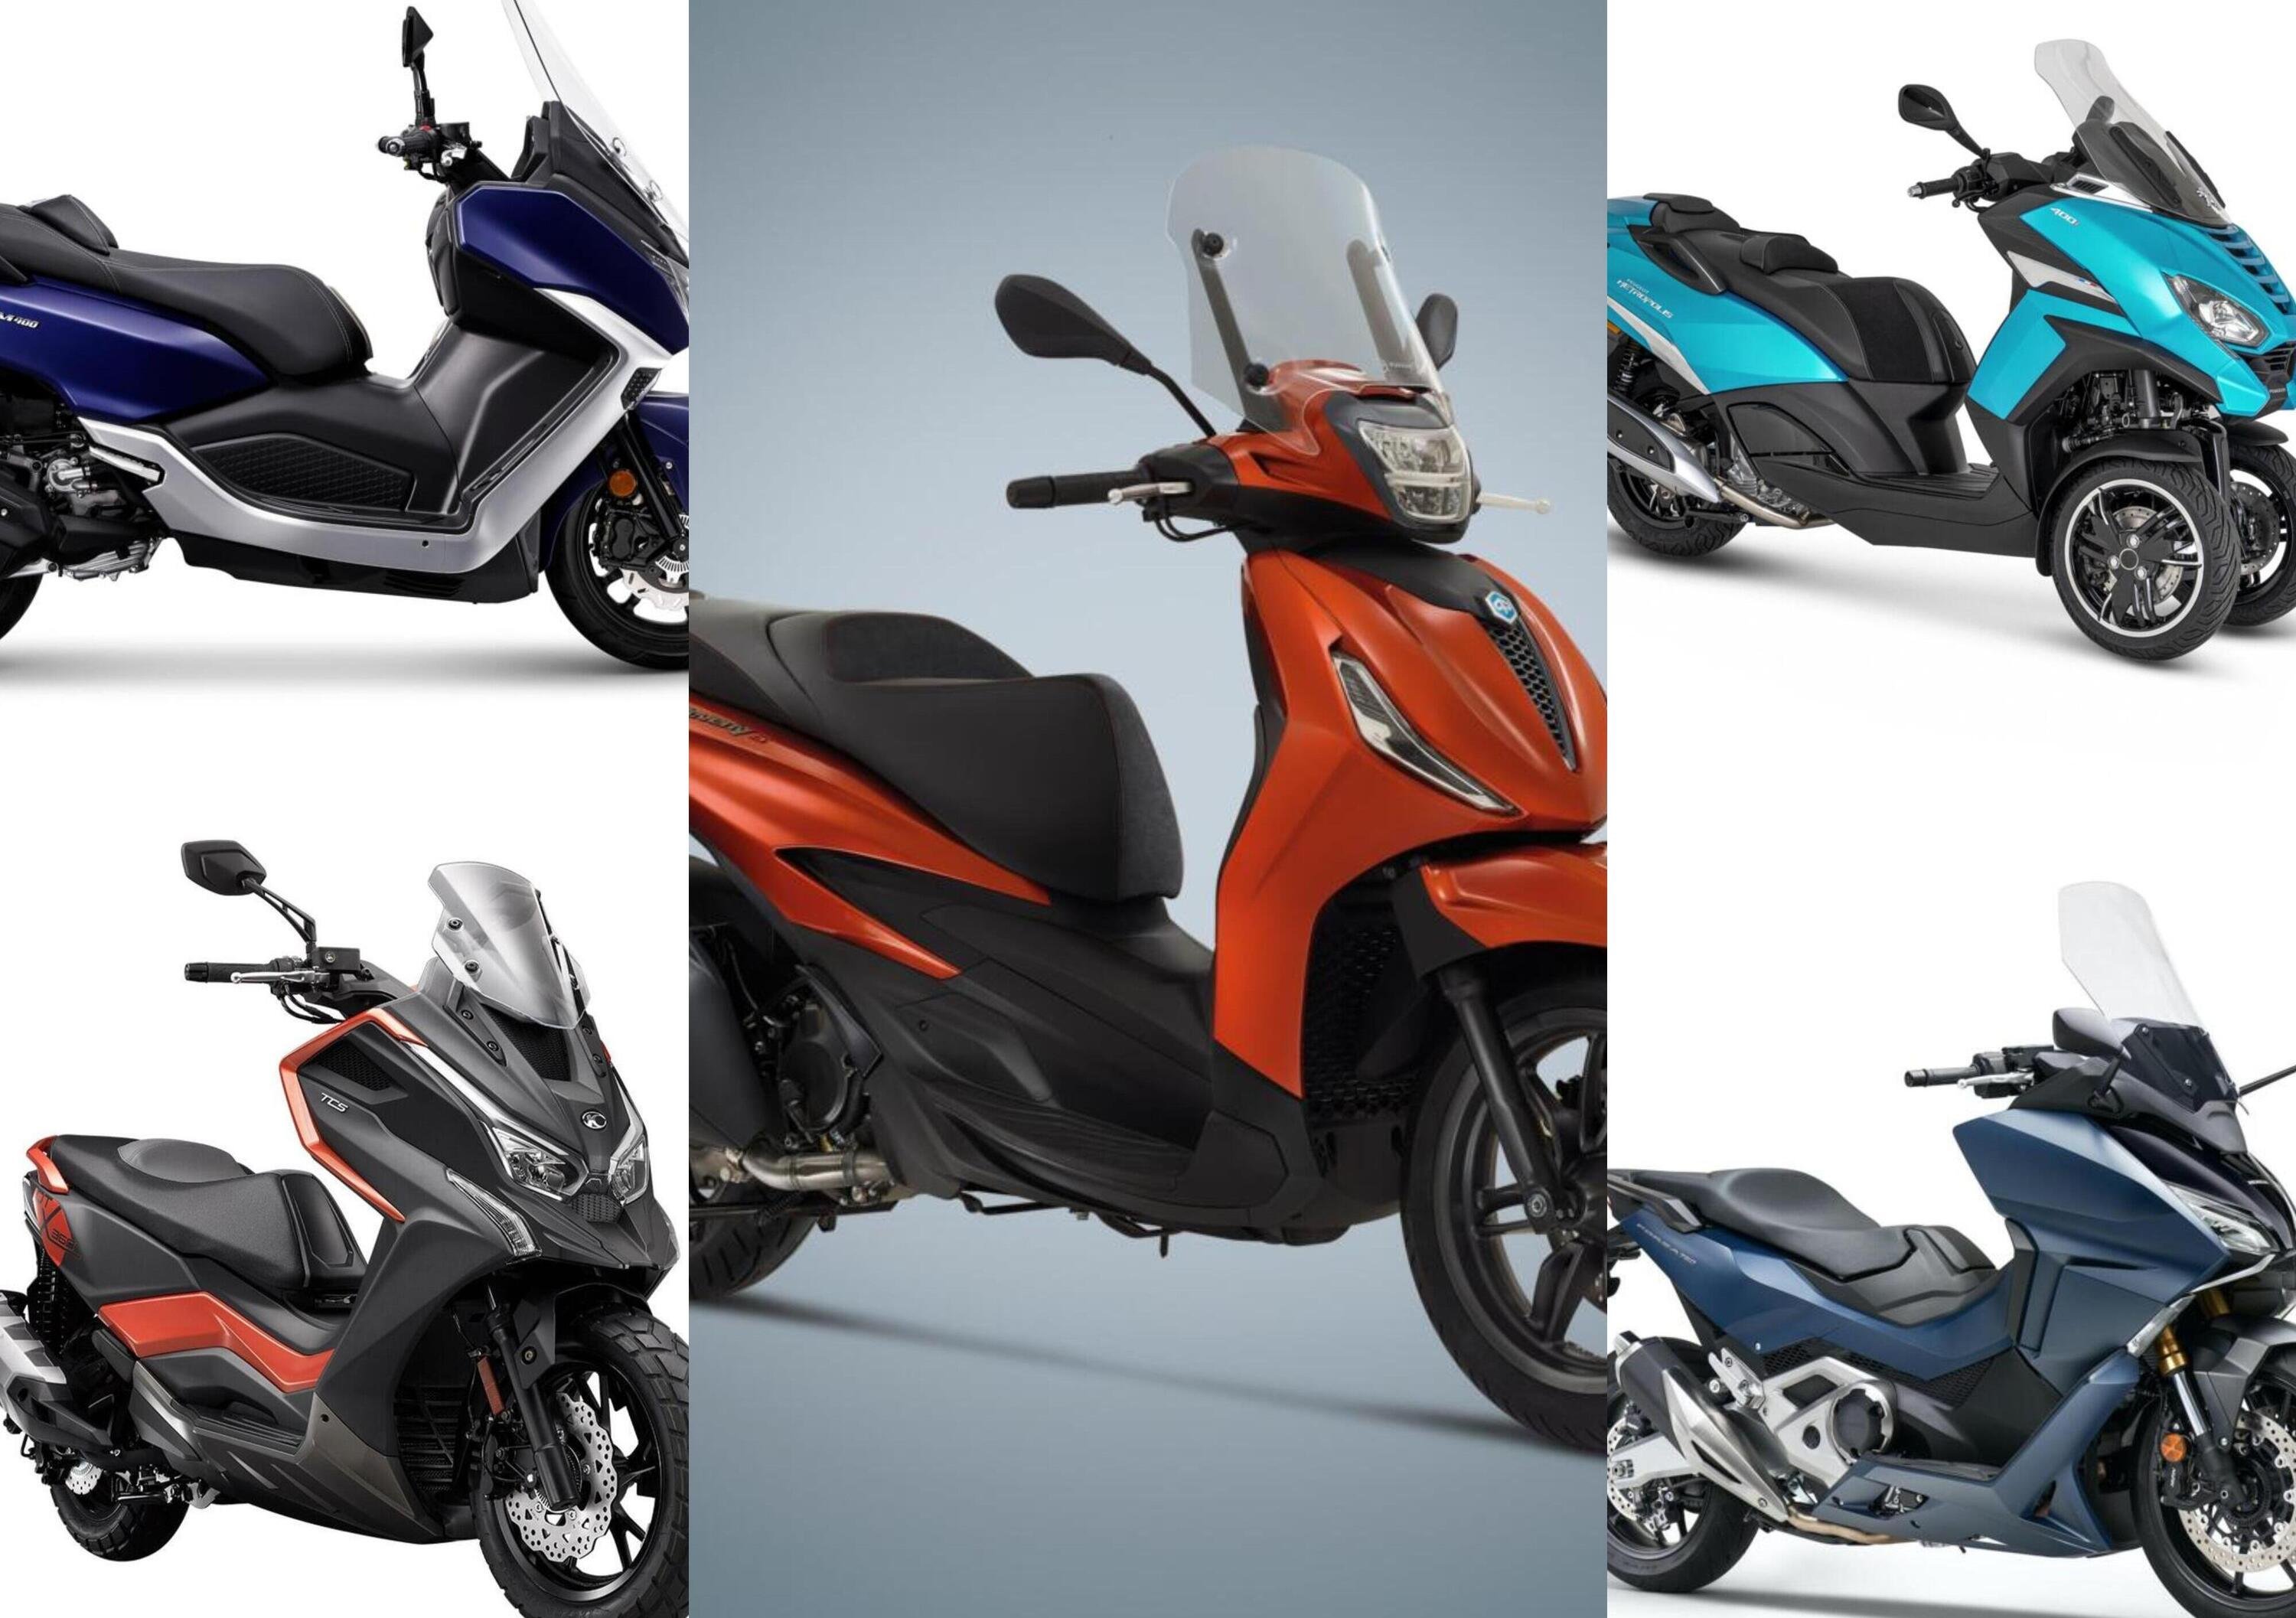 Novit&agrave; moto 2021, gli Scooter: Honda Forza 750, Kymco DT X360 e gli altri...